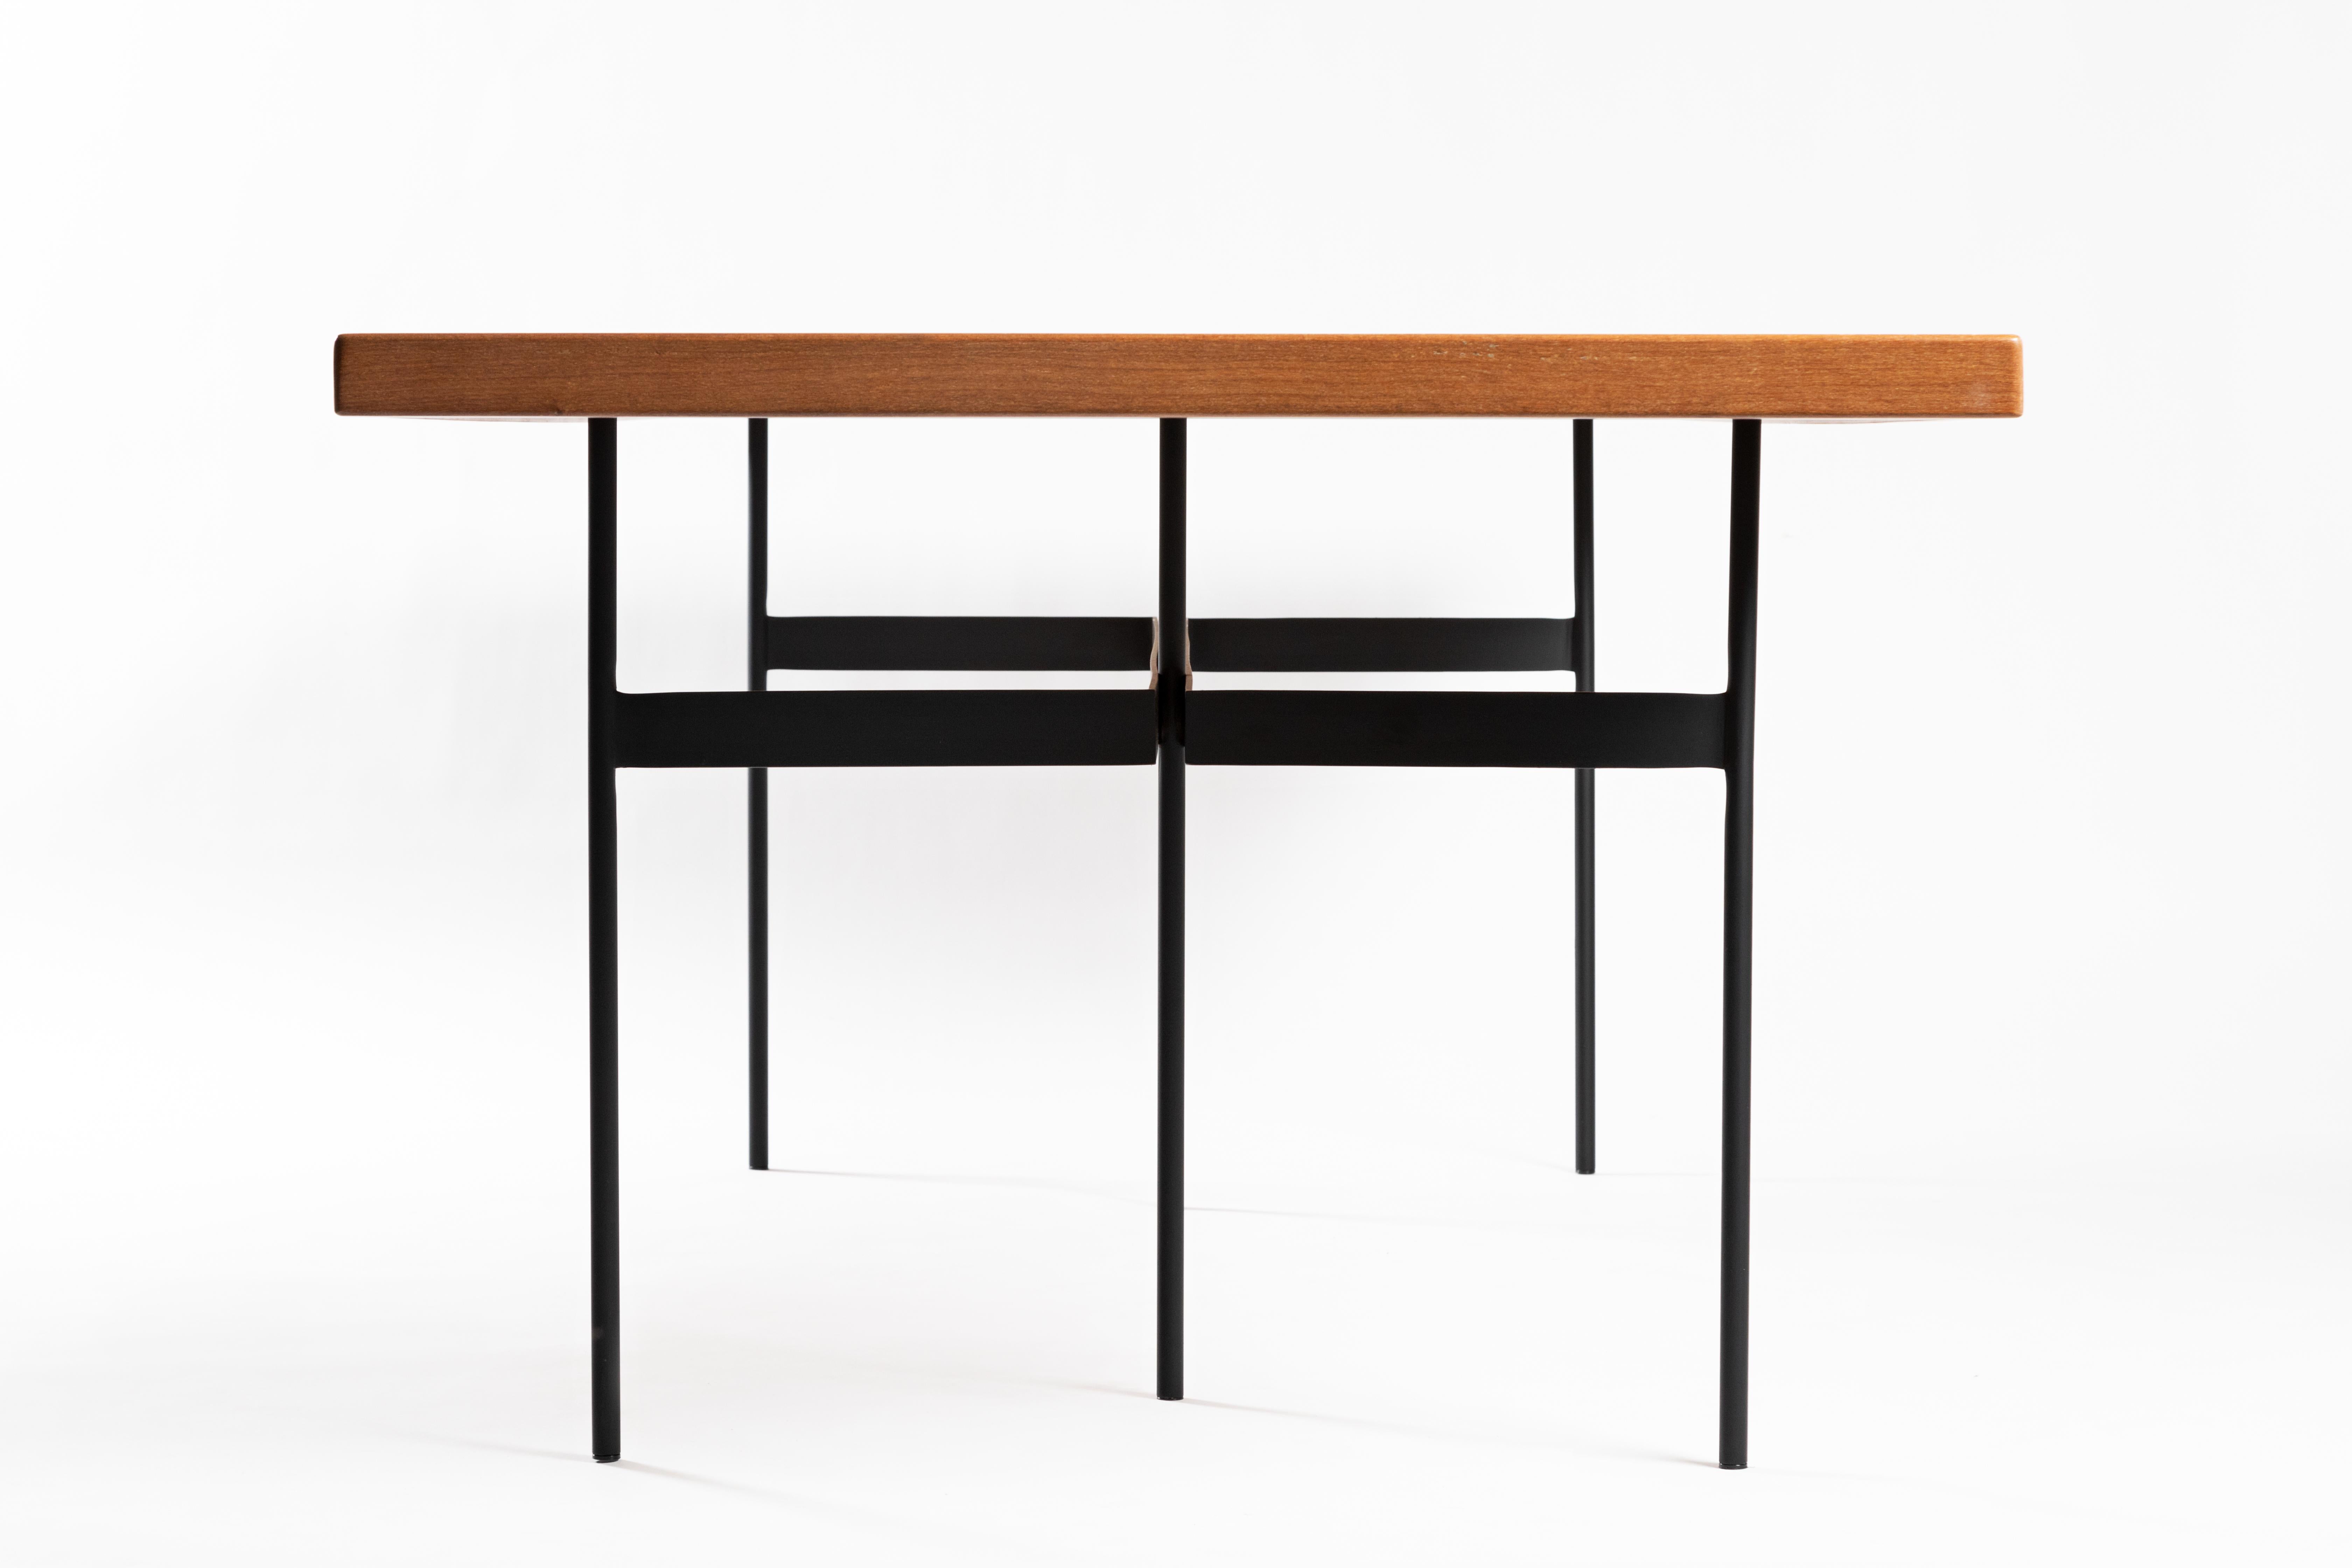 Cette table à manger brésilienne contemporaine primée est fabriquée dans un style minimaliste avec de l'acier et du bois massif, ce qui lui confère un design simple et puissant. La table a un raisonnement architectonique et géométrique, des barres